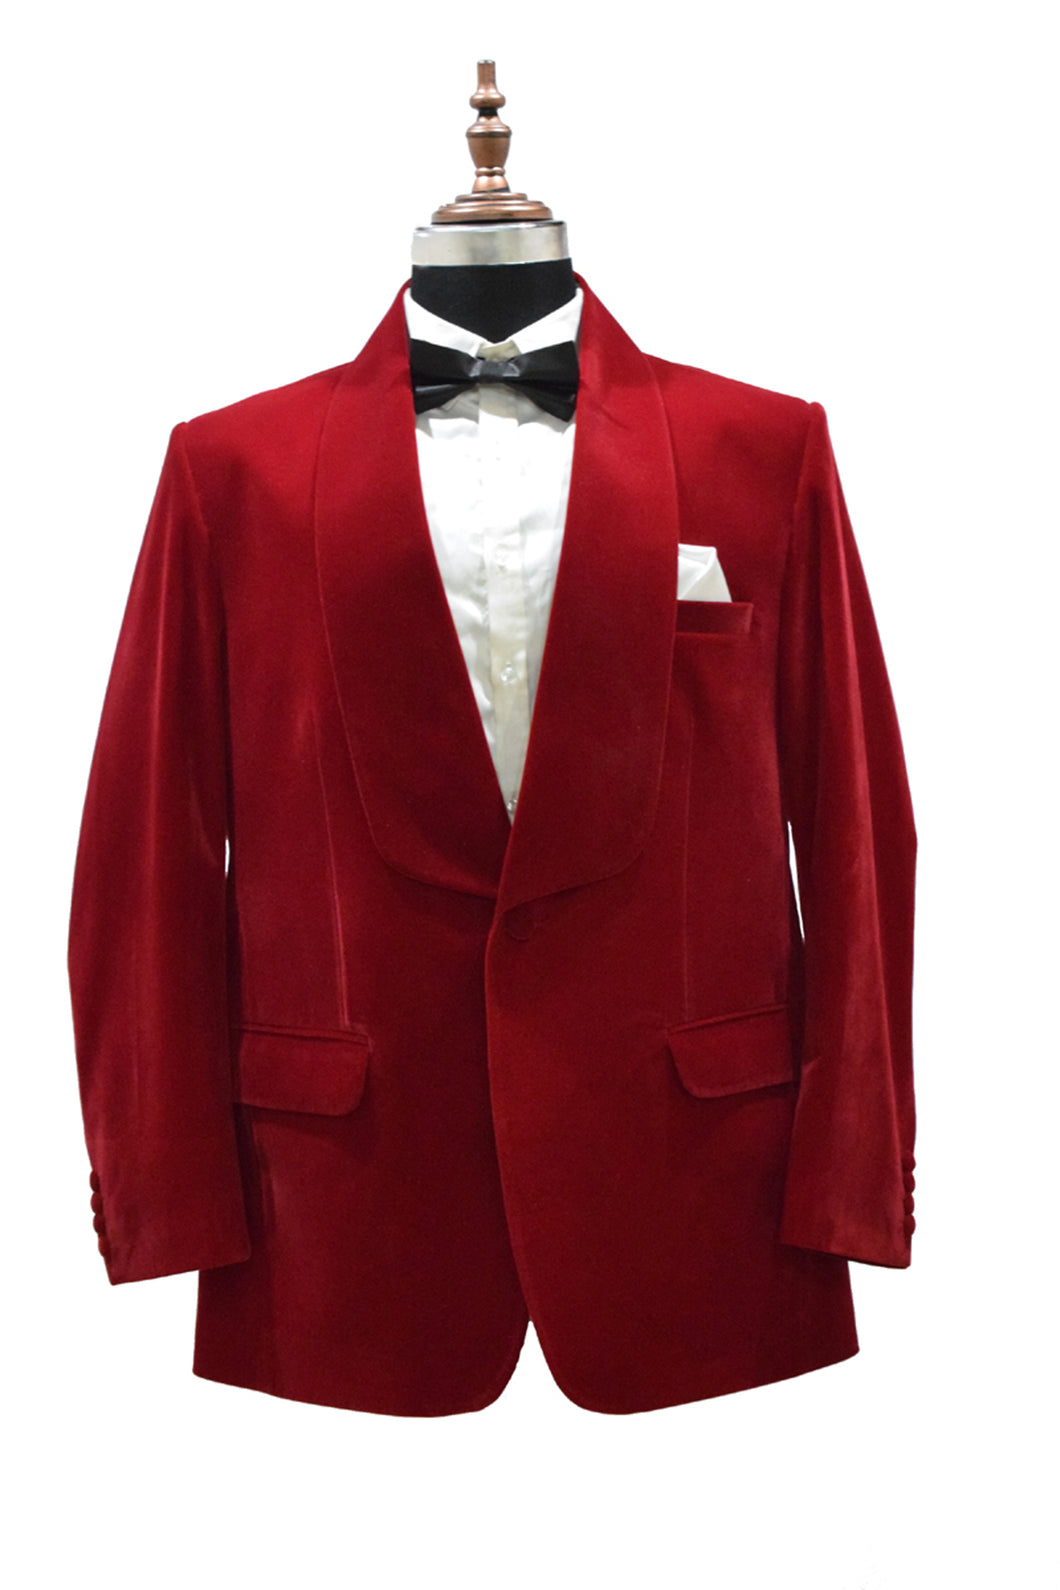 Men Red Smoking Jacket Dinner Party Wear Blazer - TrendsfashionIN